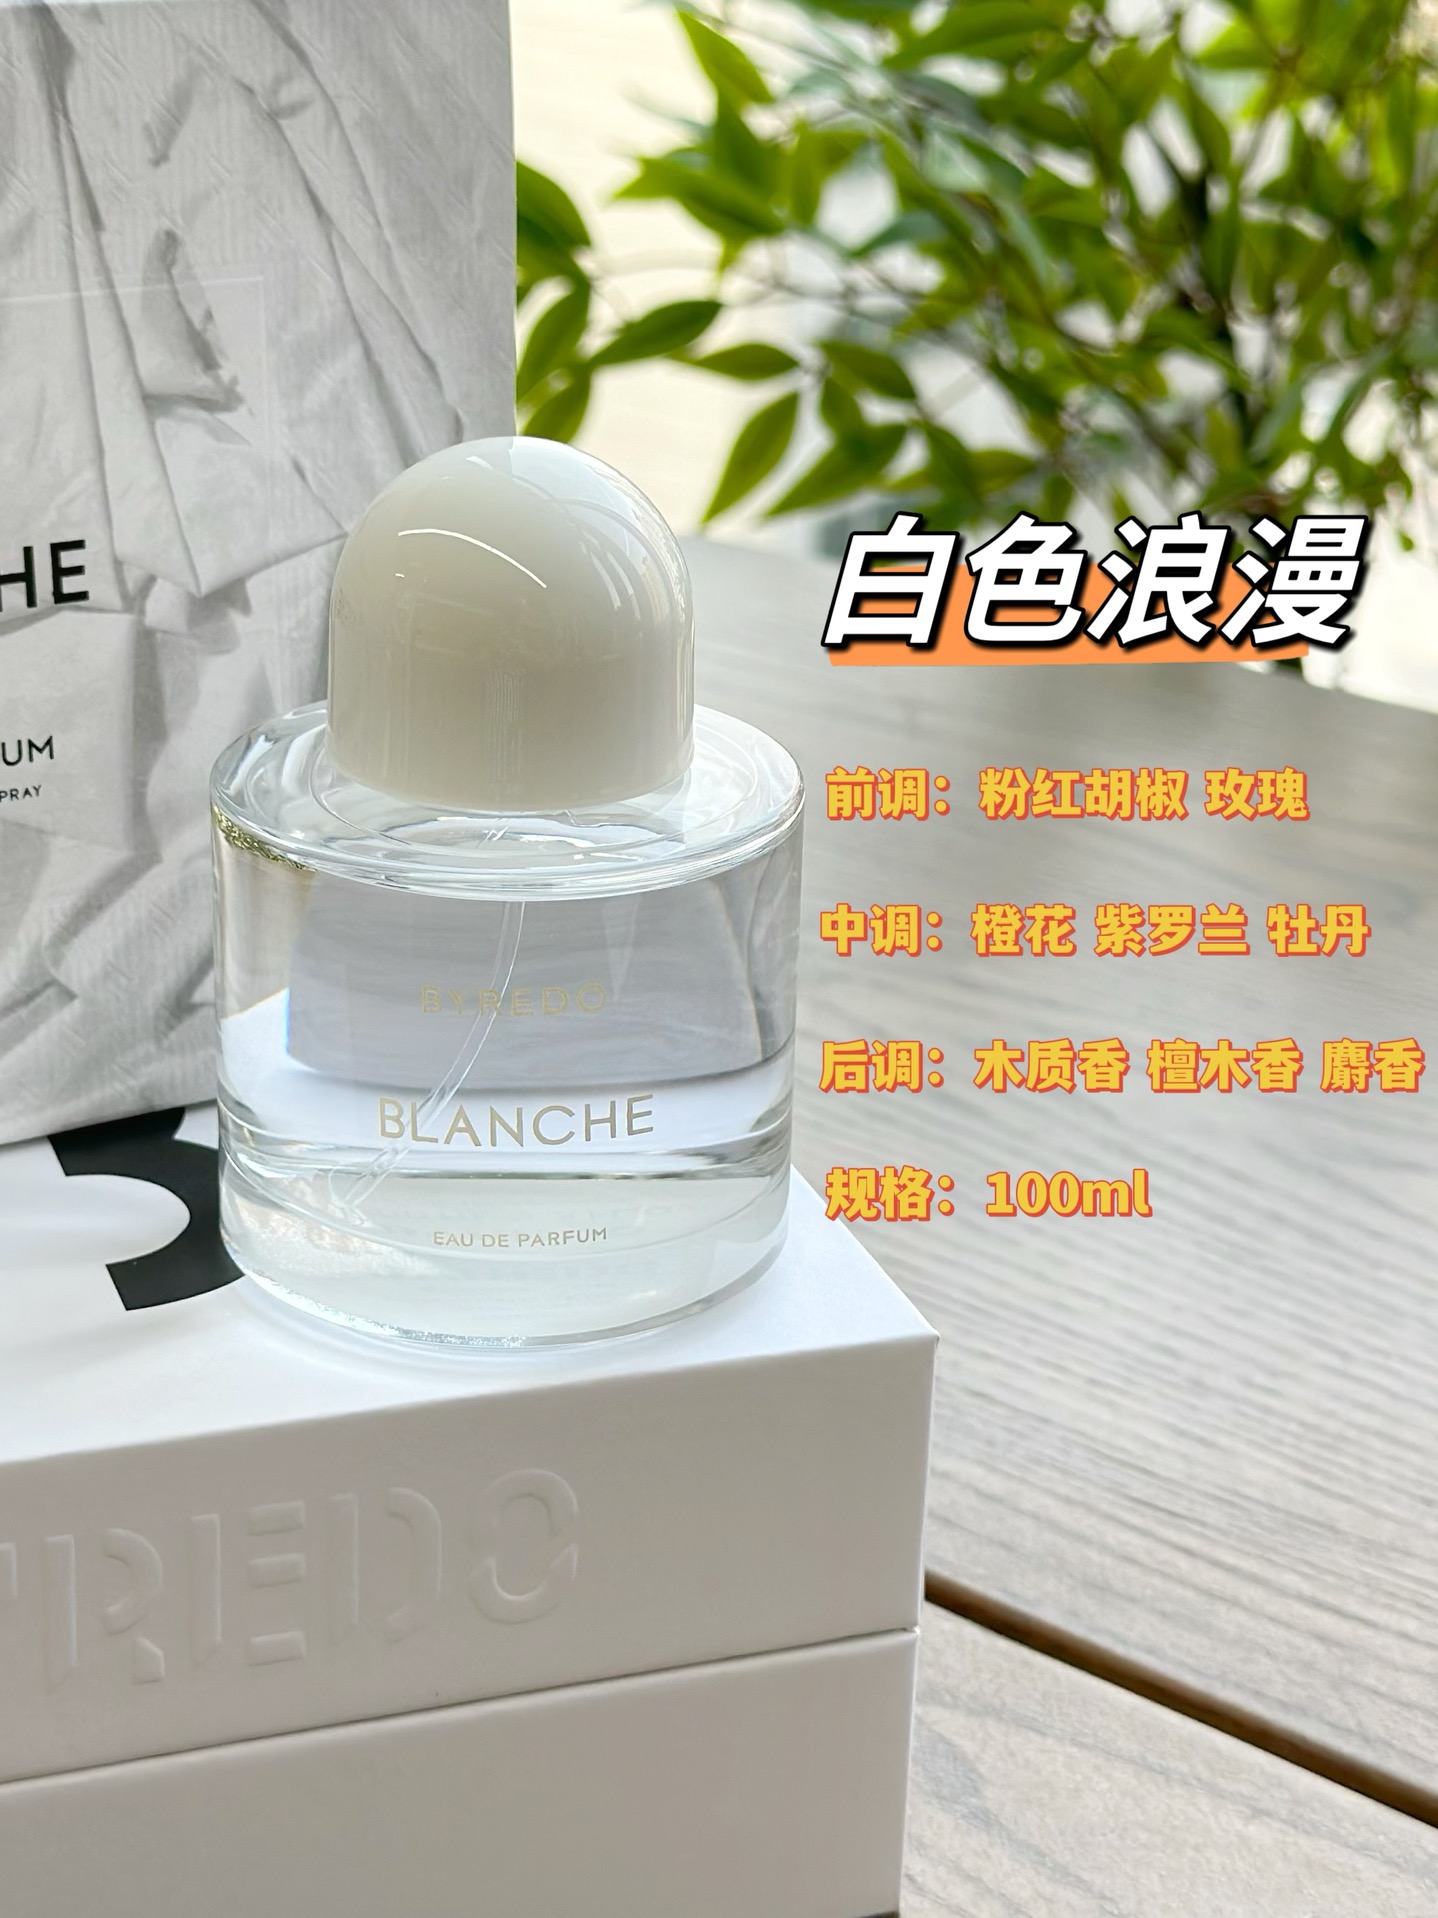 细节组图ANCHE 无疑是最能代表 RO品牌的一款香水，是阳光下晾晒的那件肥皂洗过的白T，是用月光阴干的白色亚麻床单，织物与皮肤的触感，如果他们有味道，那就应该是ANCHE。